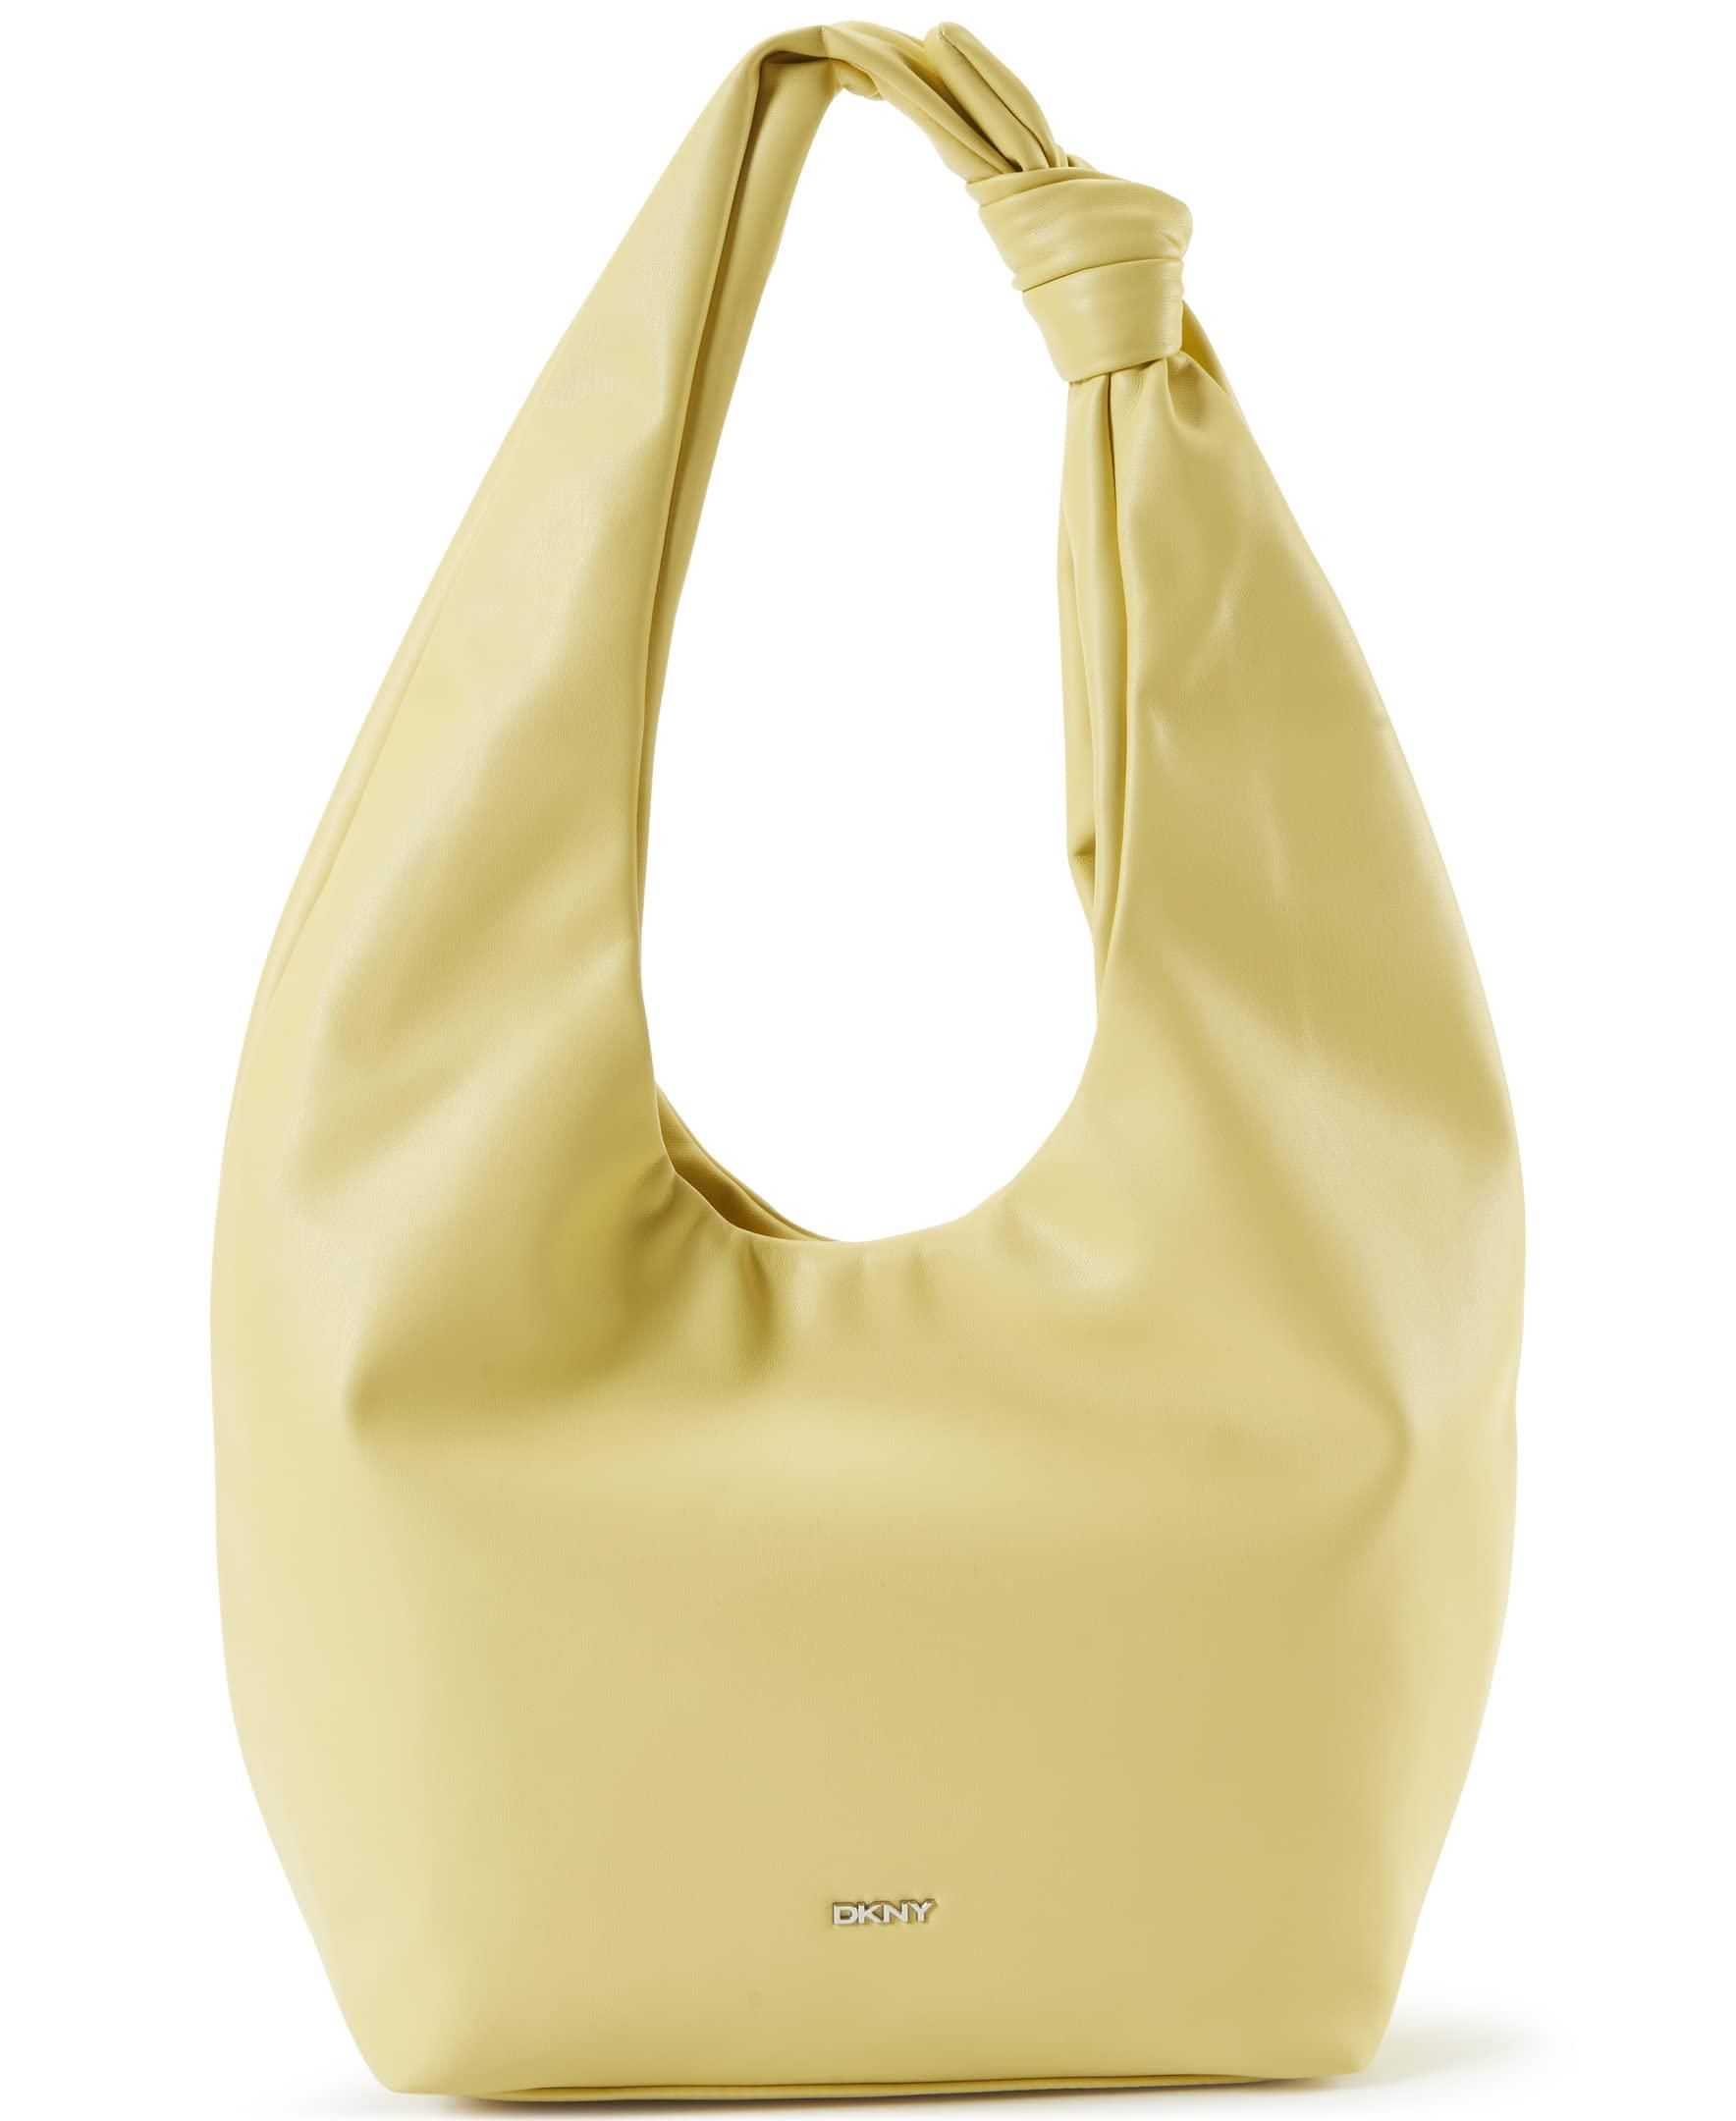 DKNY Lexington Shoulder Bag, Black/Gold: Handbags